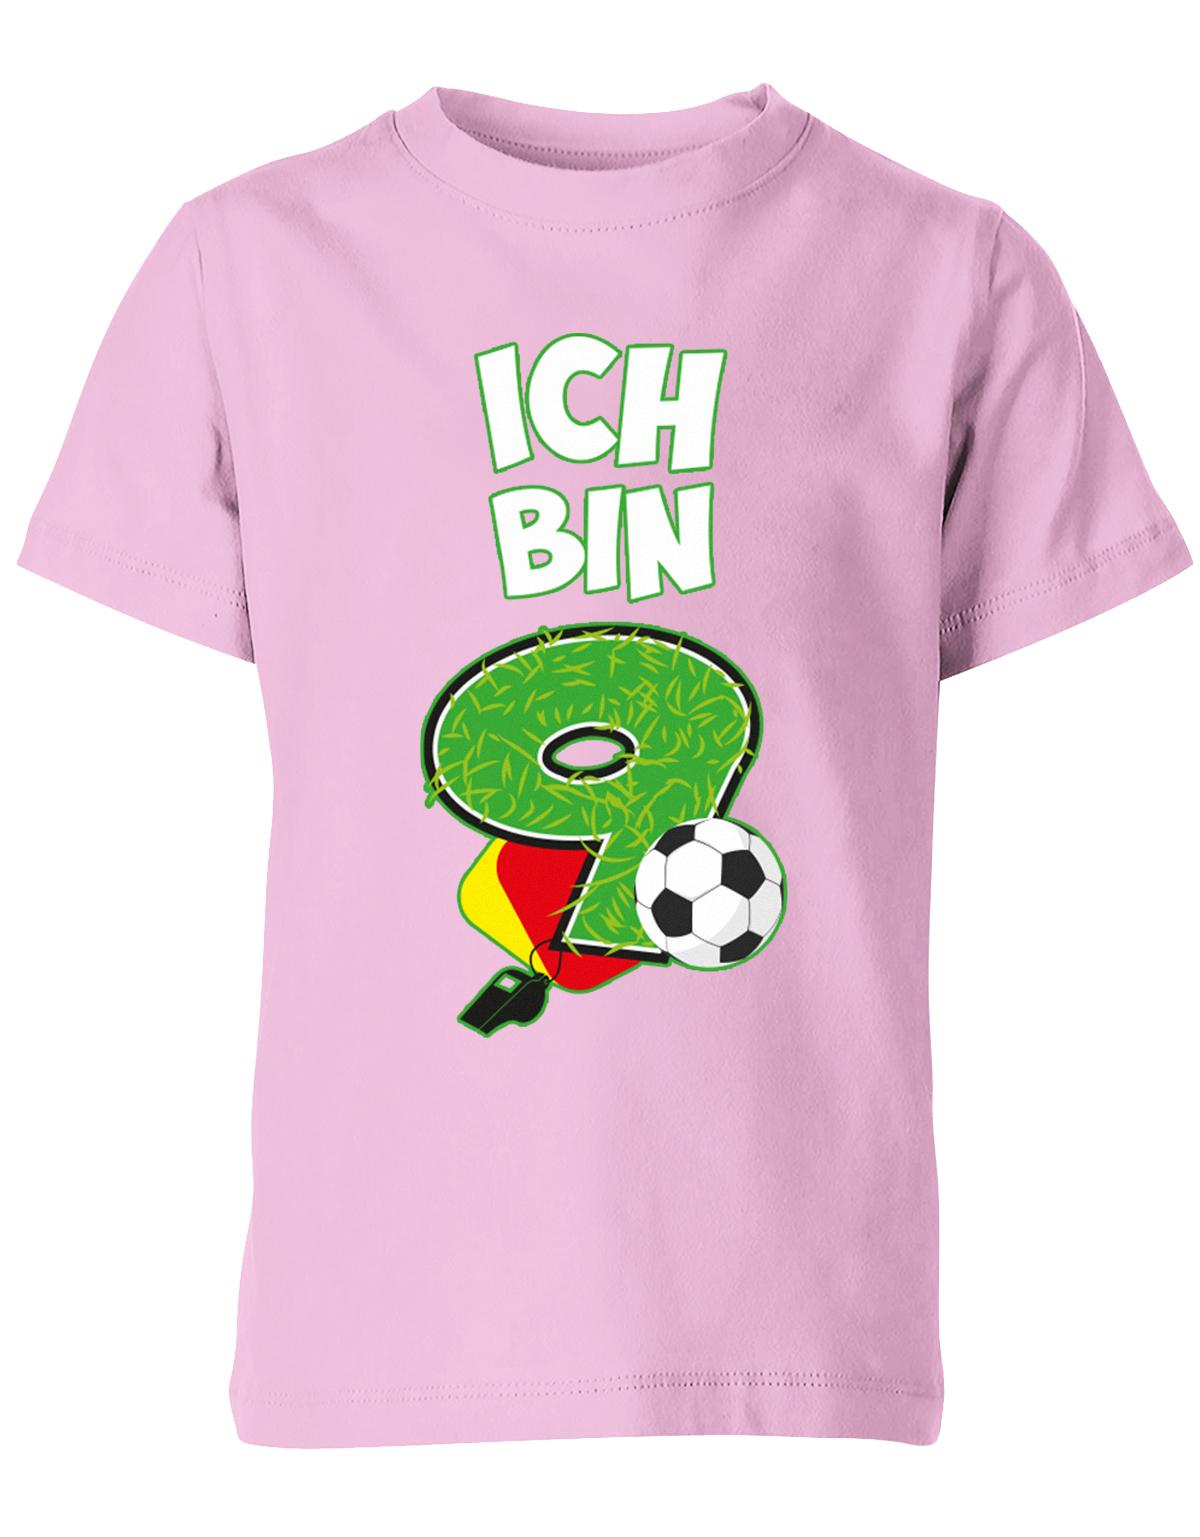 ich-bin-9-fussball-rote-gelbe-karte-geburtstag-fussballer-shirt-kinder-shirt-rosa